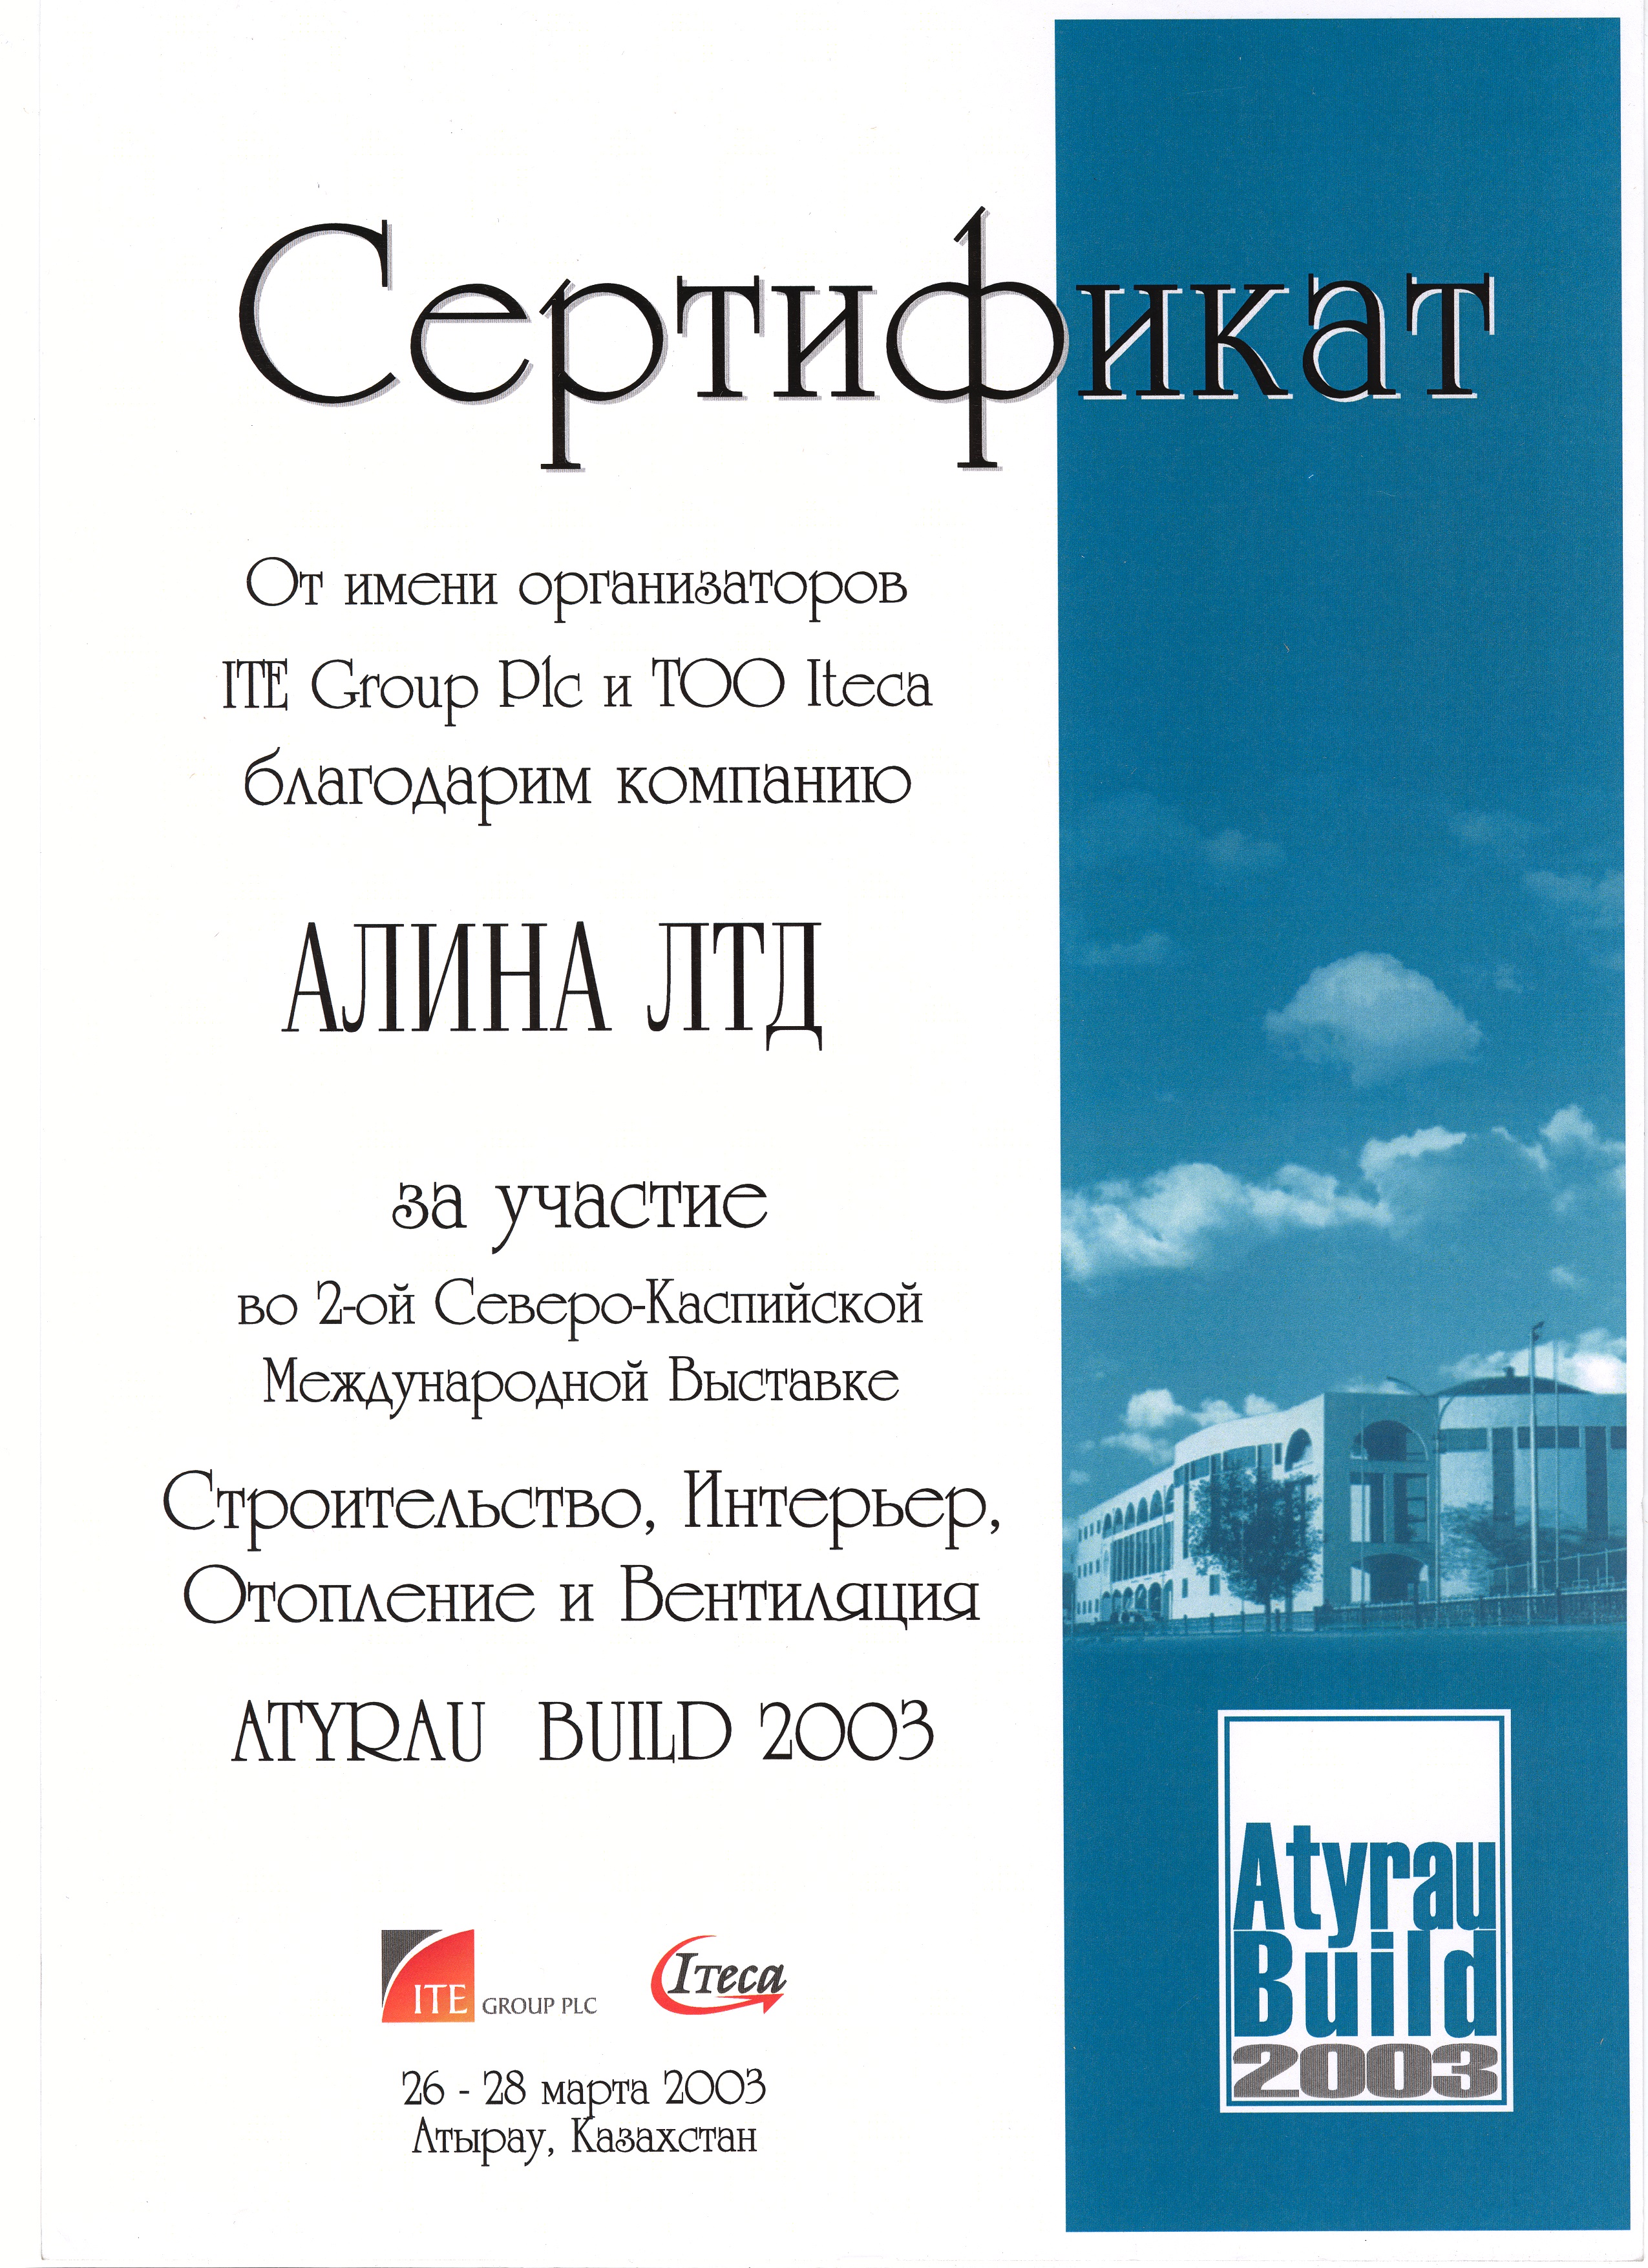 Atyrau Build 2003